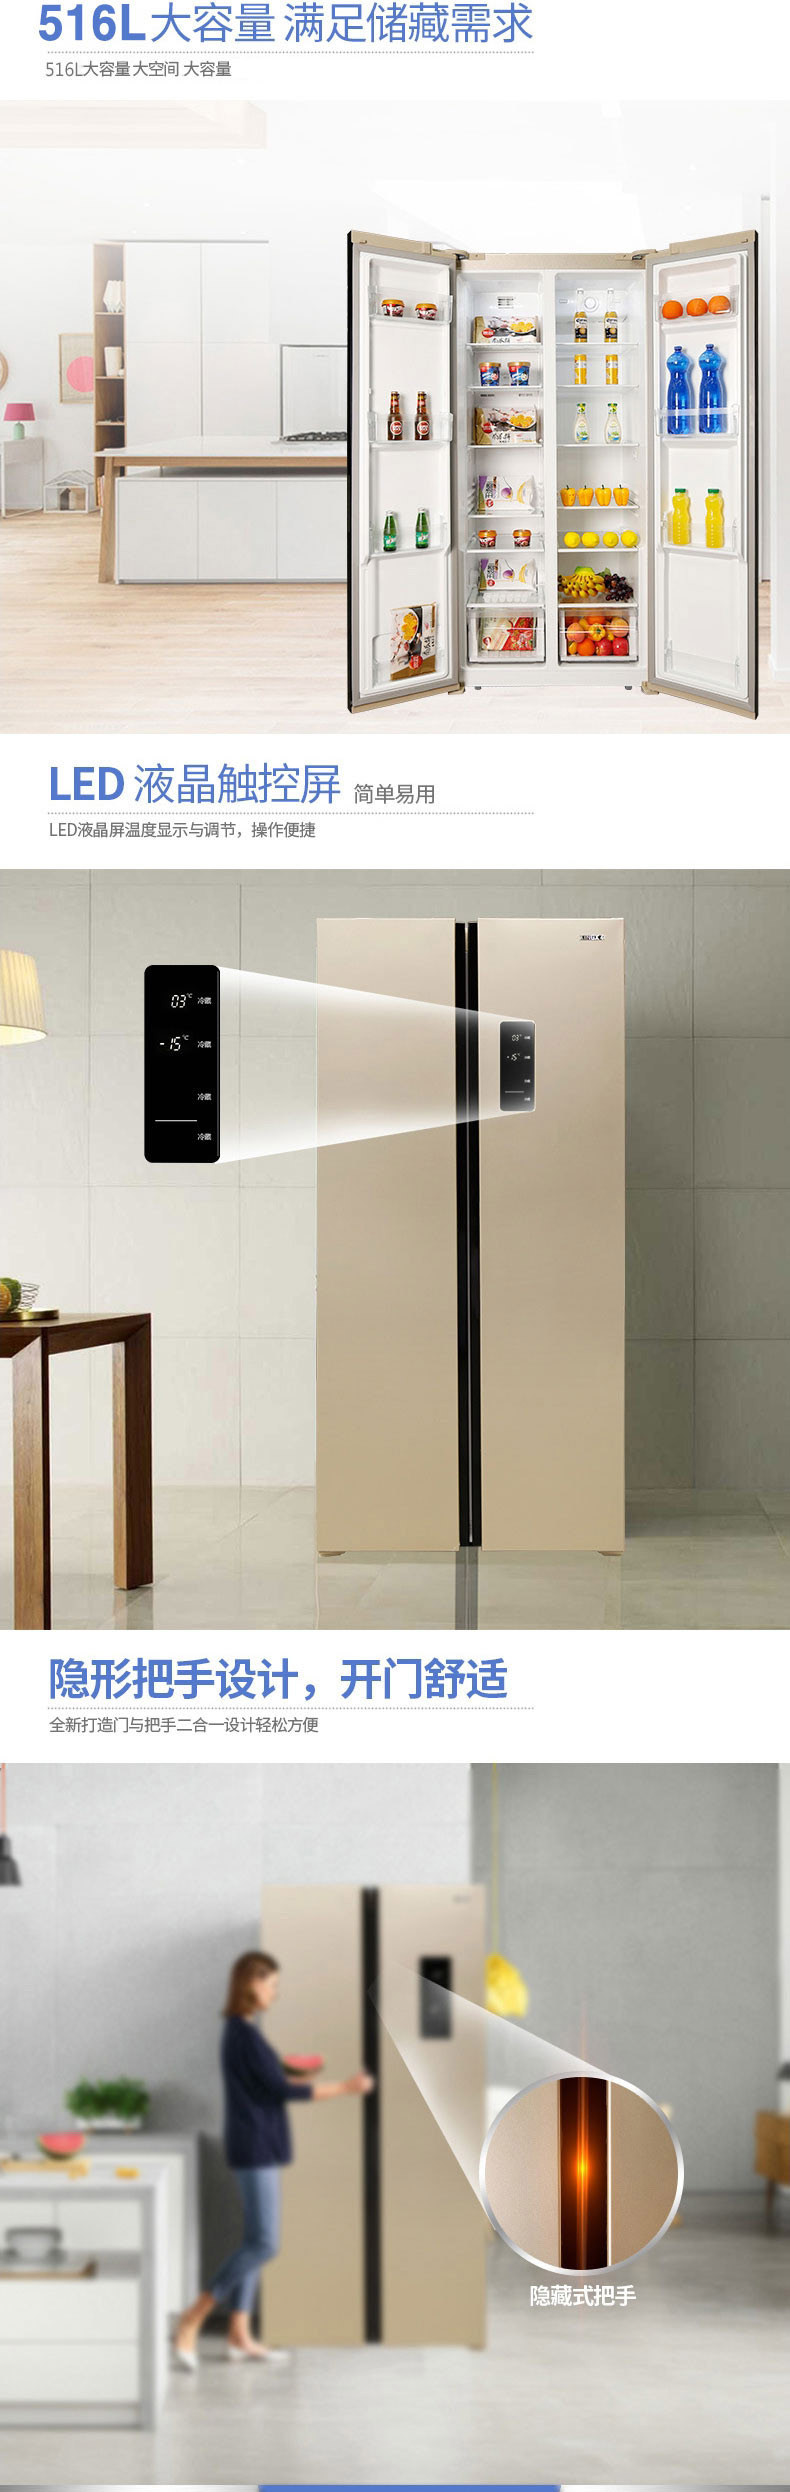 【仅限新乡地区销售】星星制冷冰箱BCD-516WDA 对开门516L家用冰箱